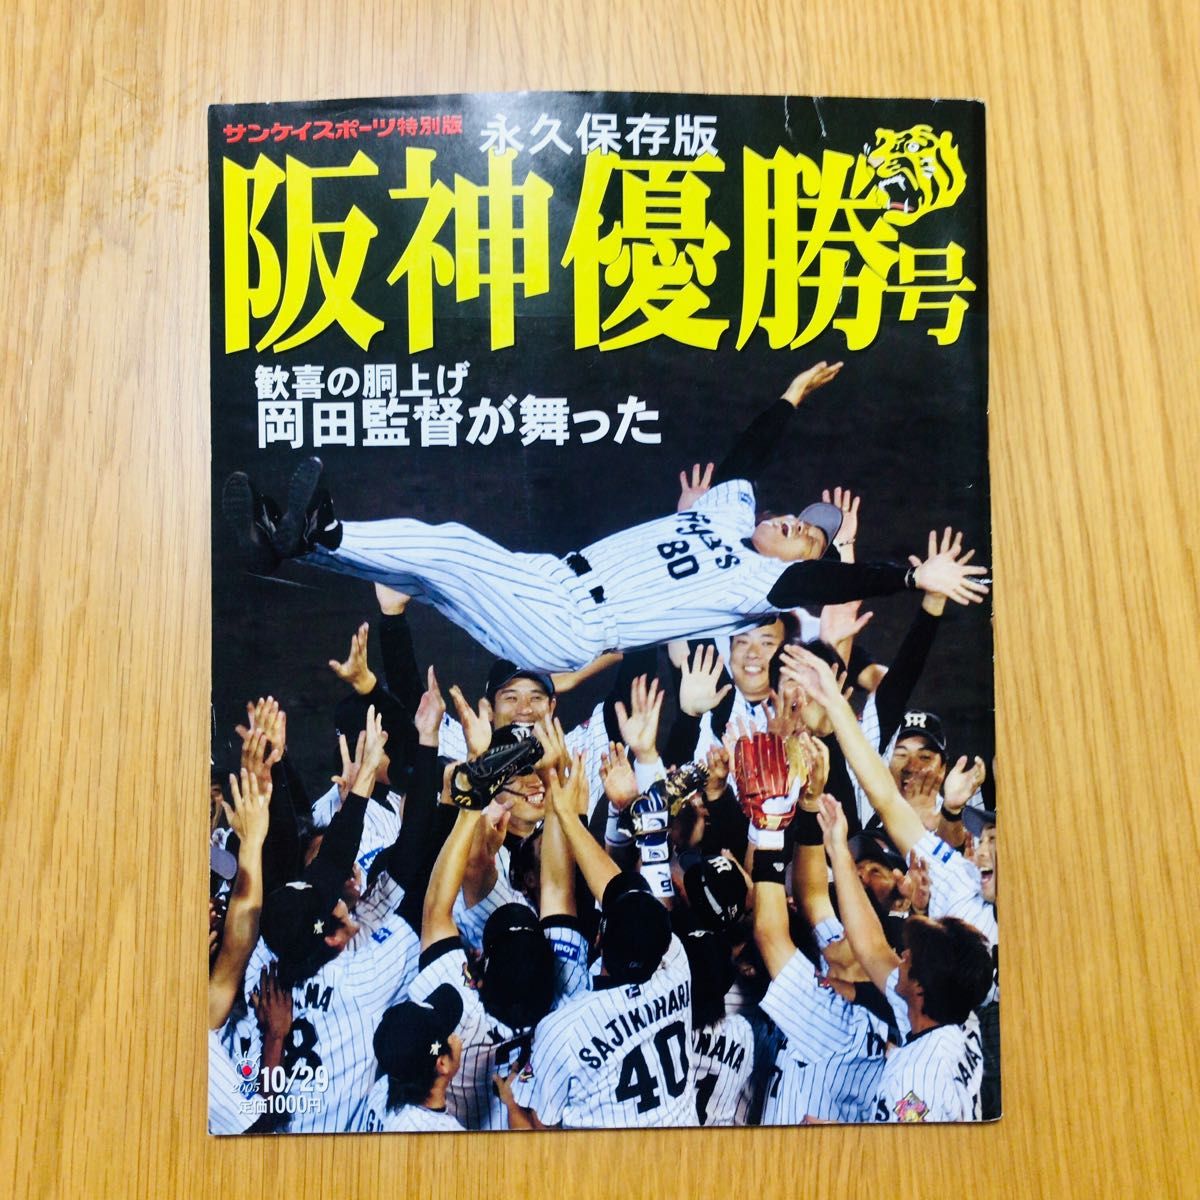 阪神タイガース 優勝 サンスポ デイリースポーツ